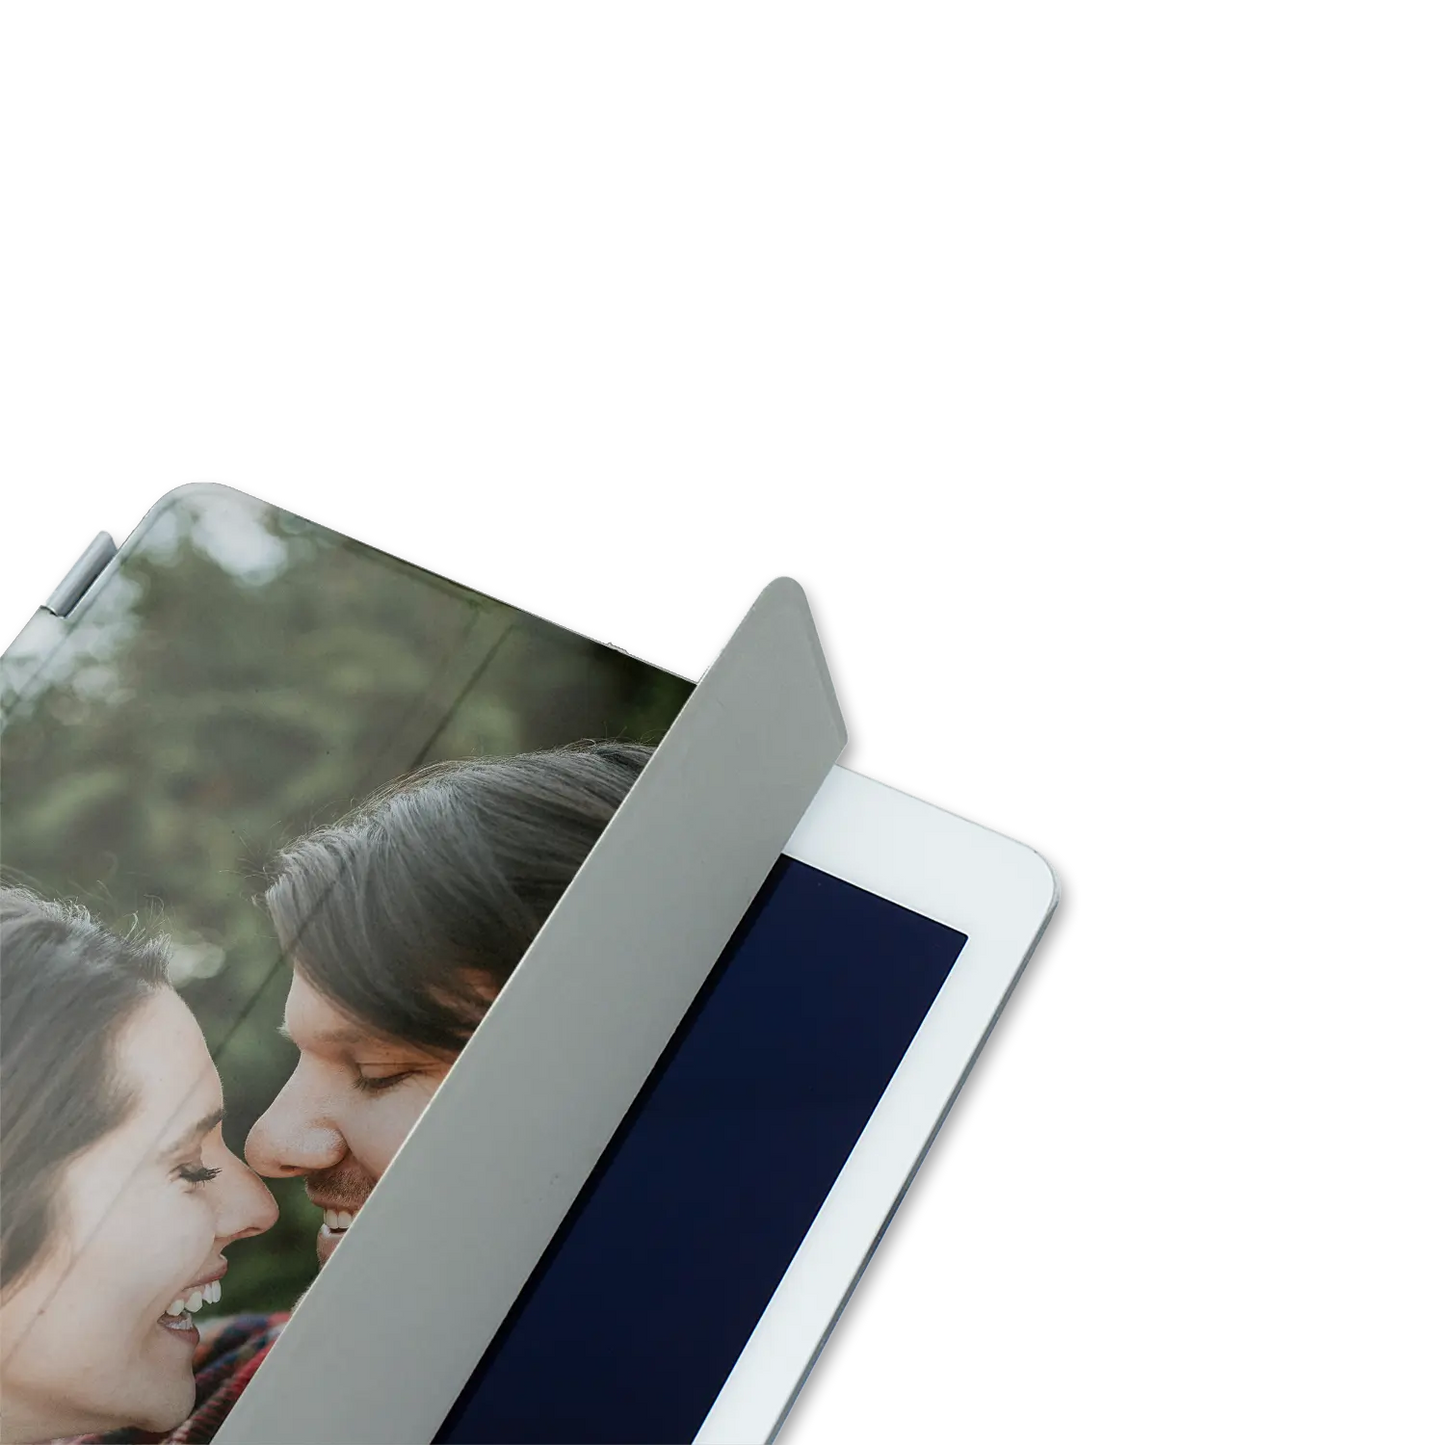 1 Photo - Coque personnaliséee pour iPad